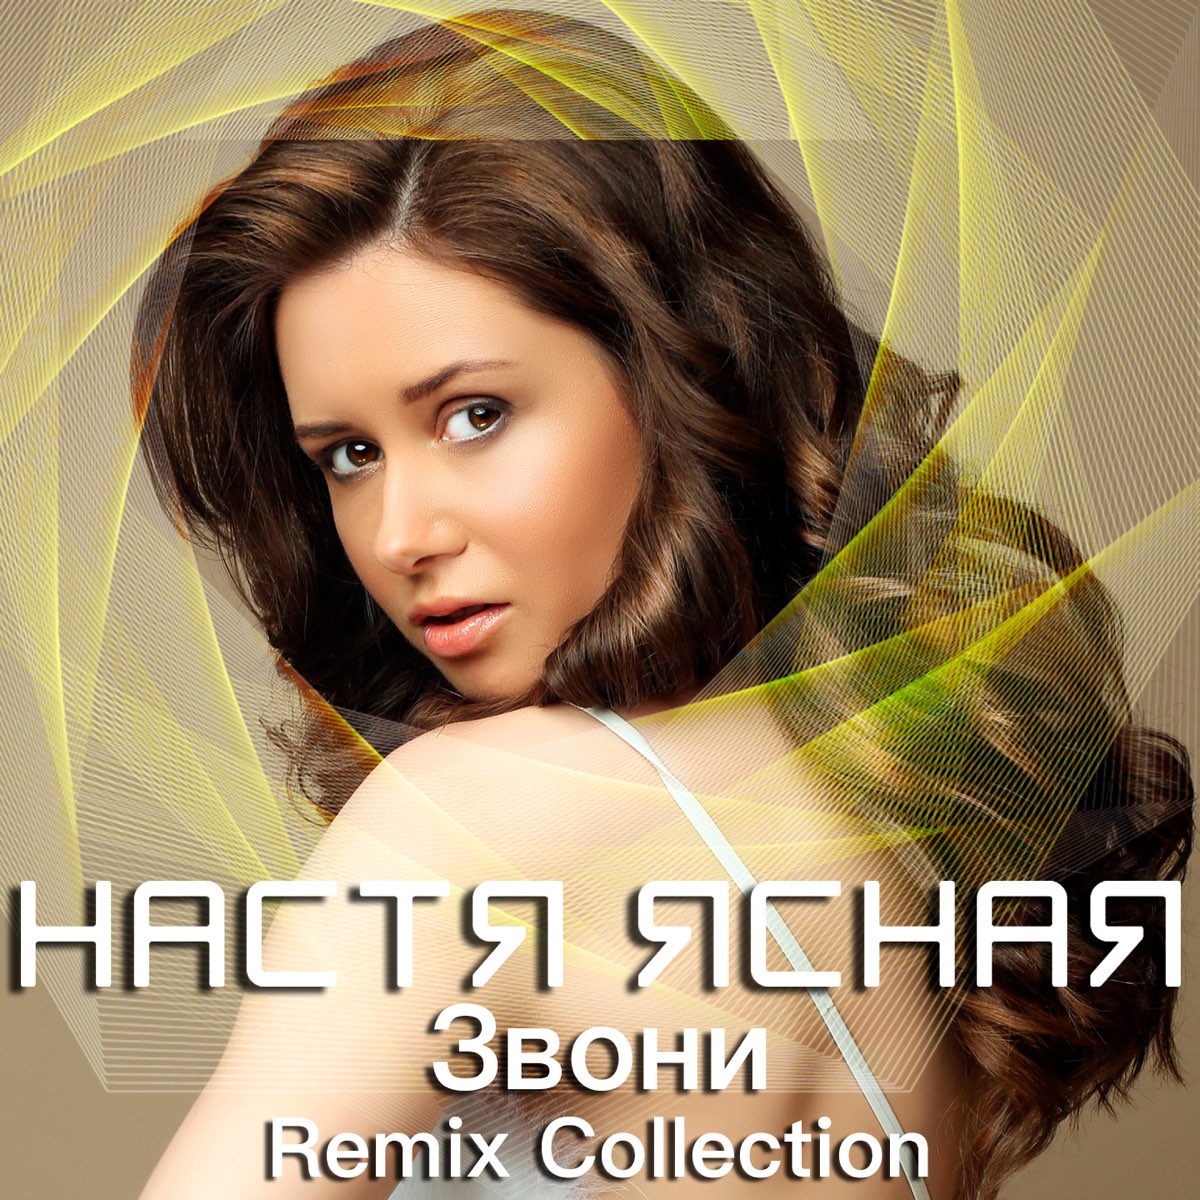 Remix collection. Настя Ясная. Настя Ясная - моя любовь (альбом 2012). Коллекция Remix. Песни Настя Ясная.